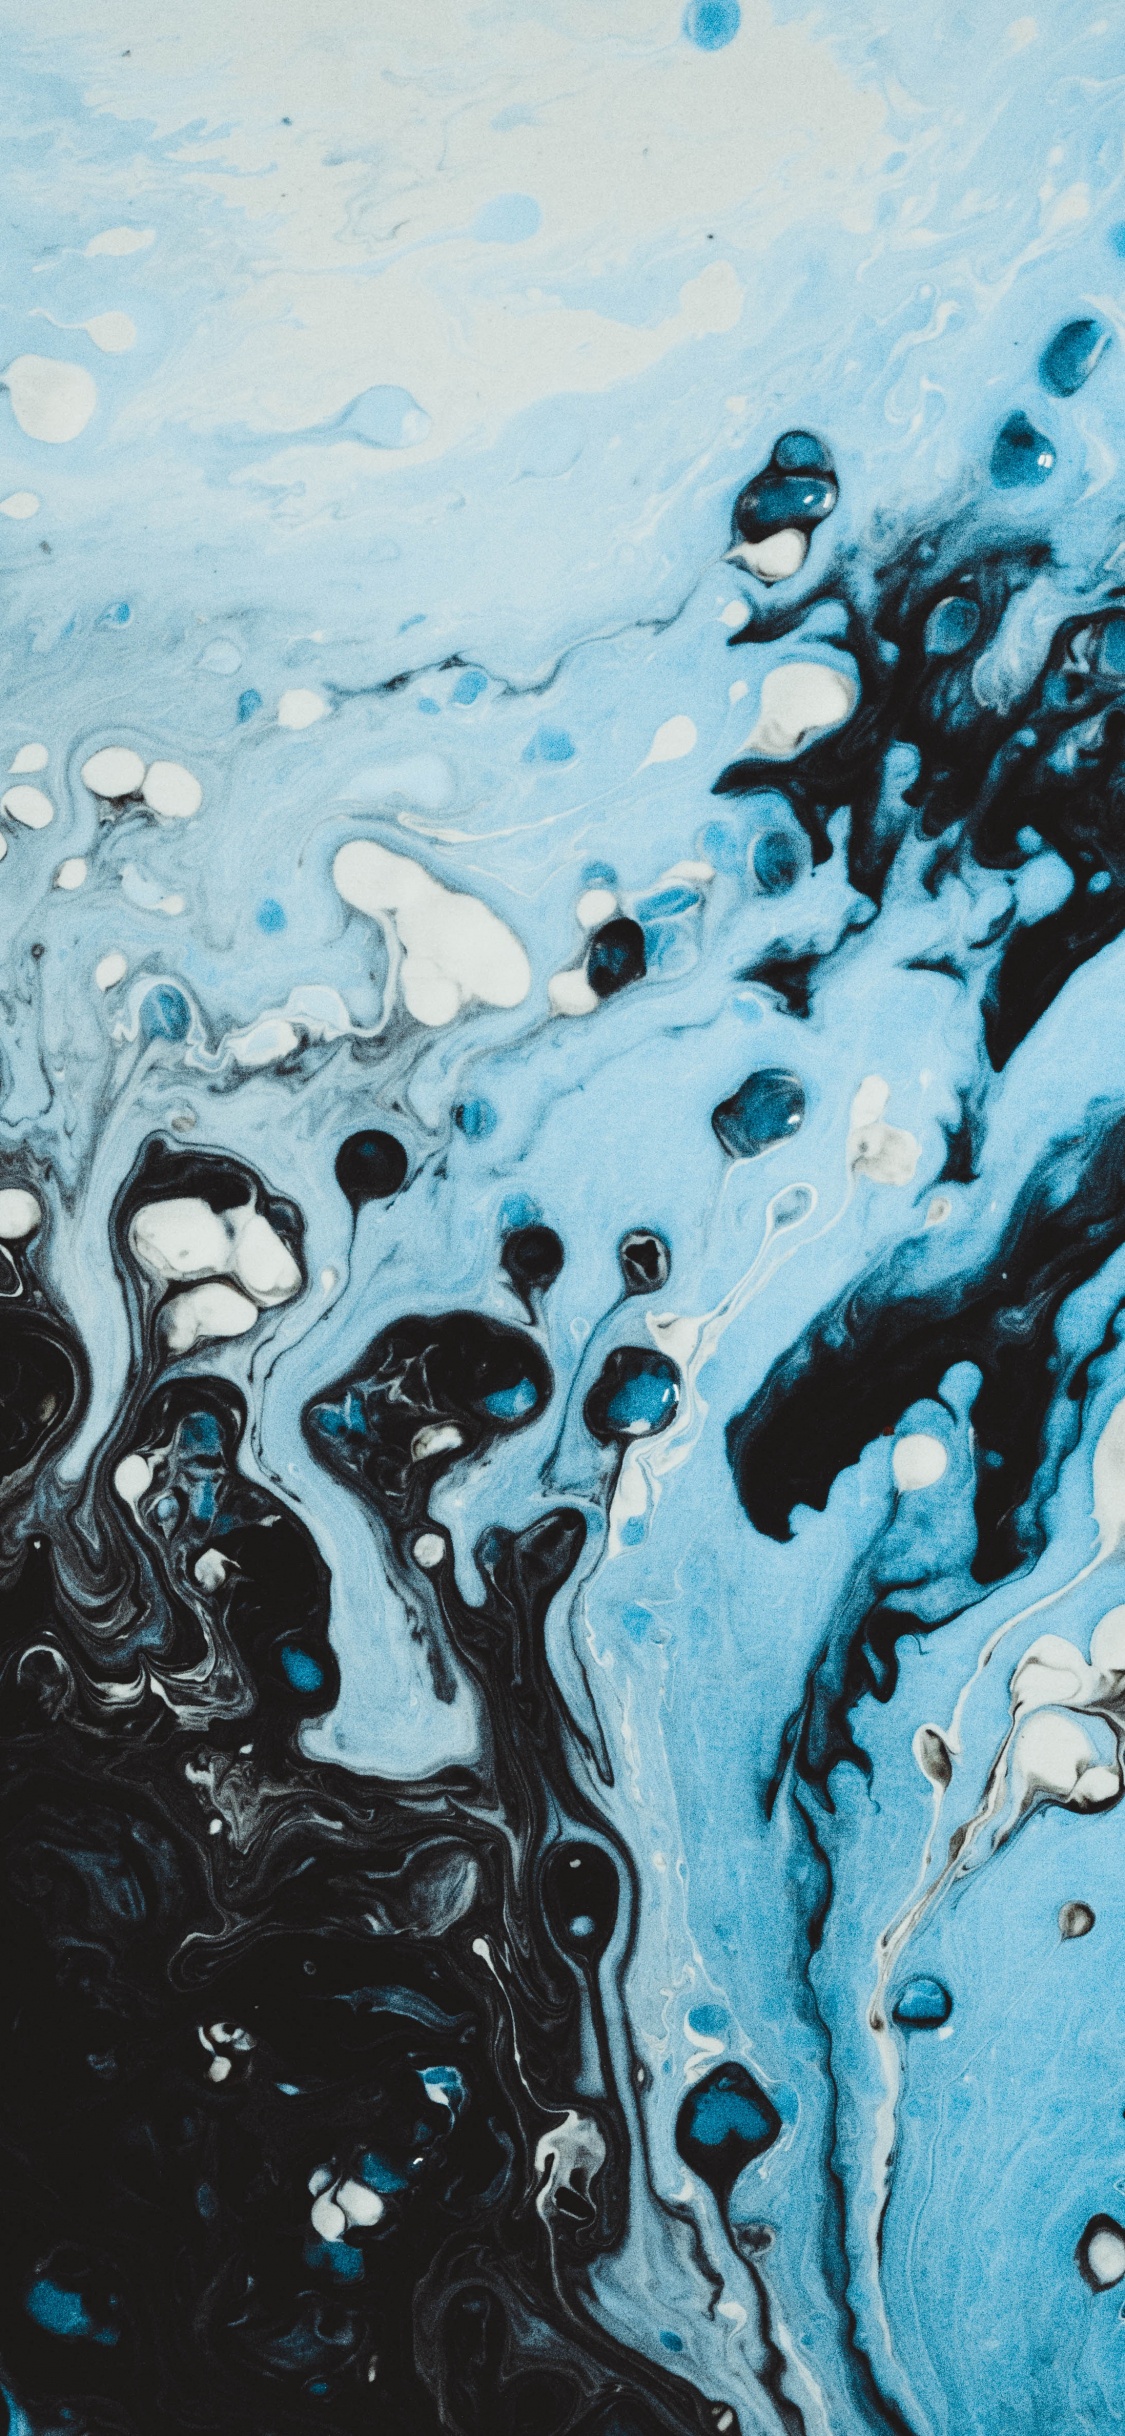 Éclaboussures D'eau Bleue et Blanche. Wallpaper in 1125x2436 Resolution